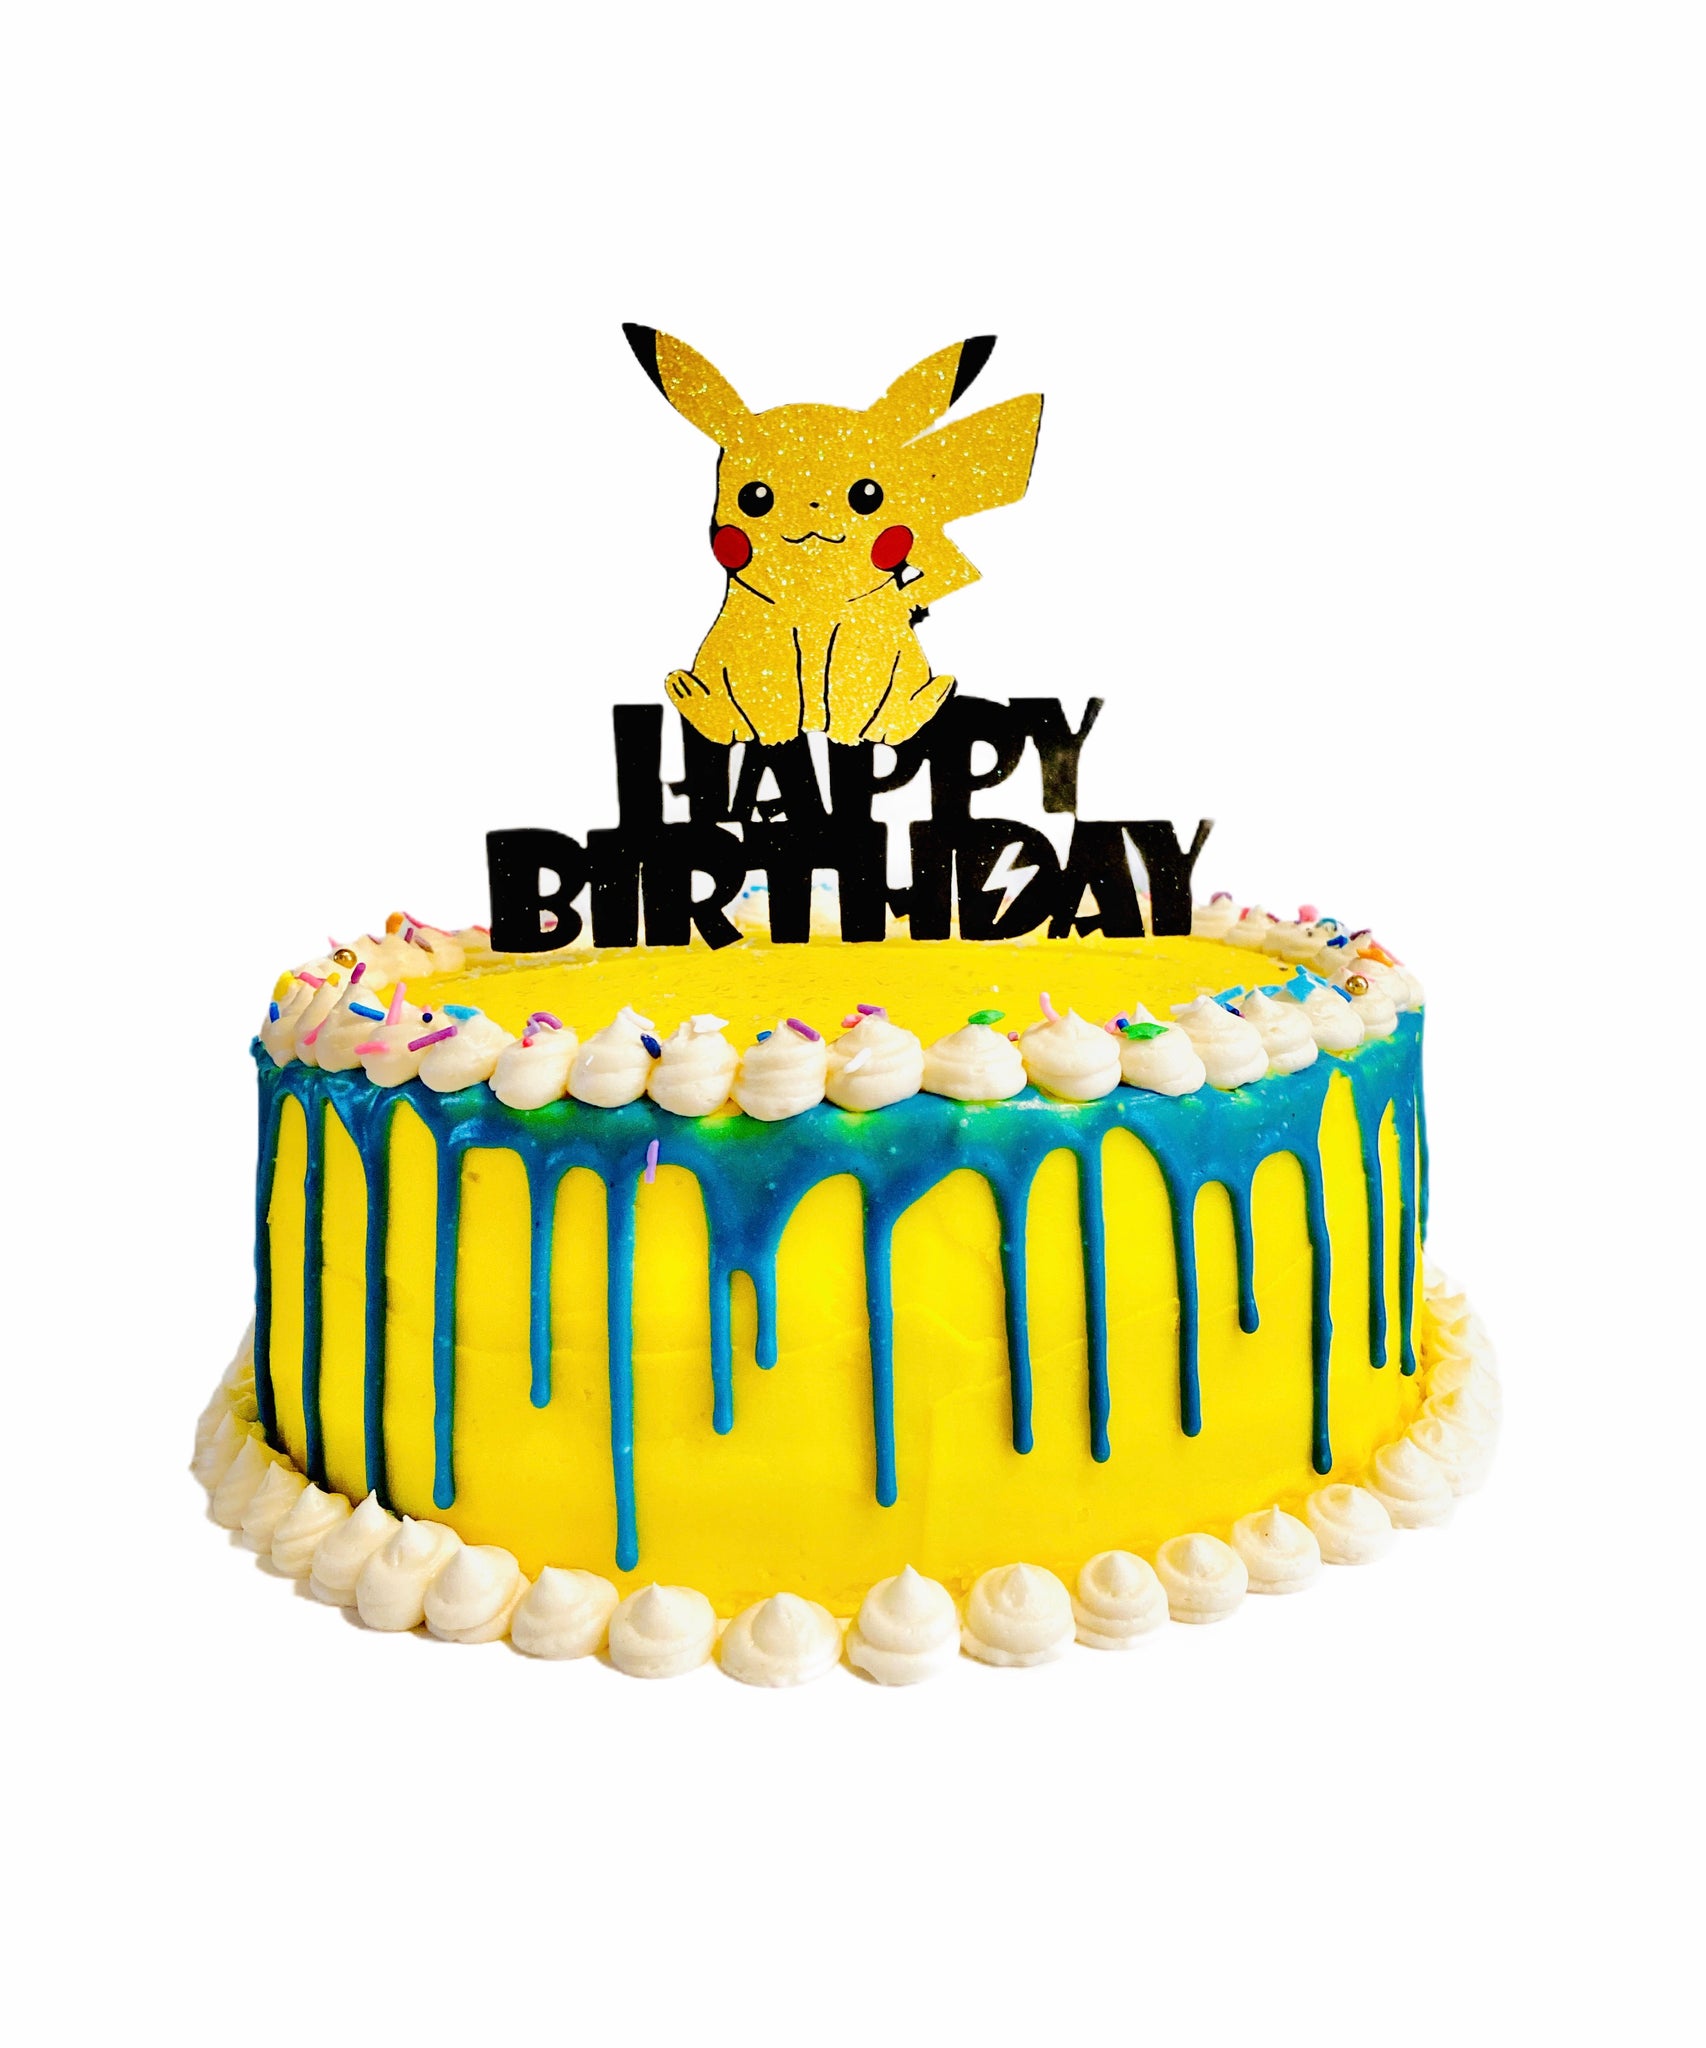 Pokémon pikachu cake | Pokemon cake, Pokemon birthday cake, Pikachu cake